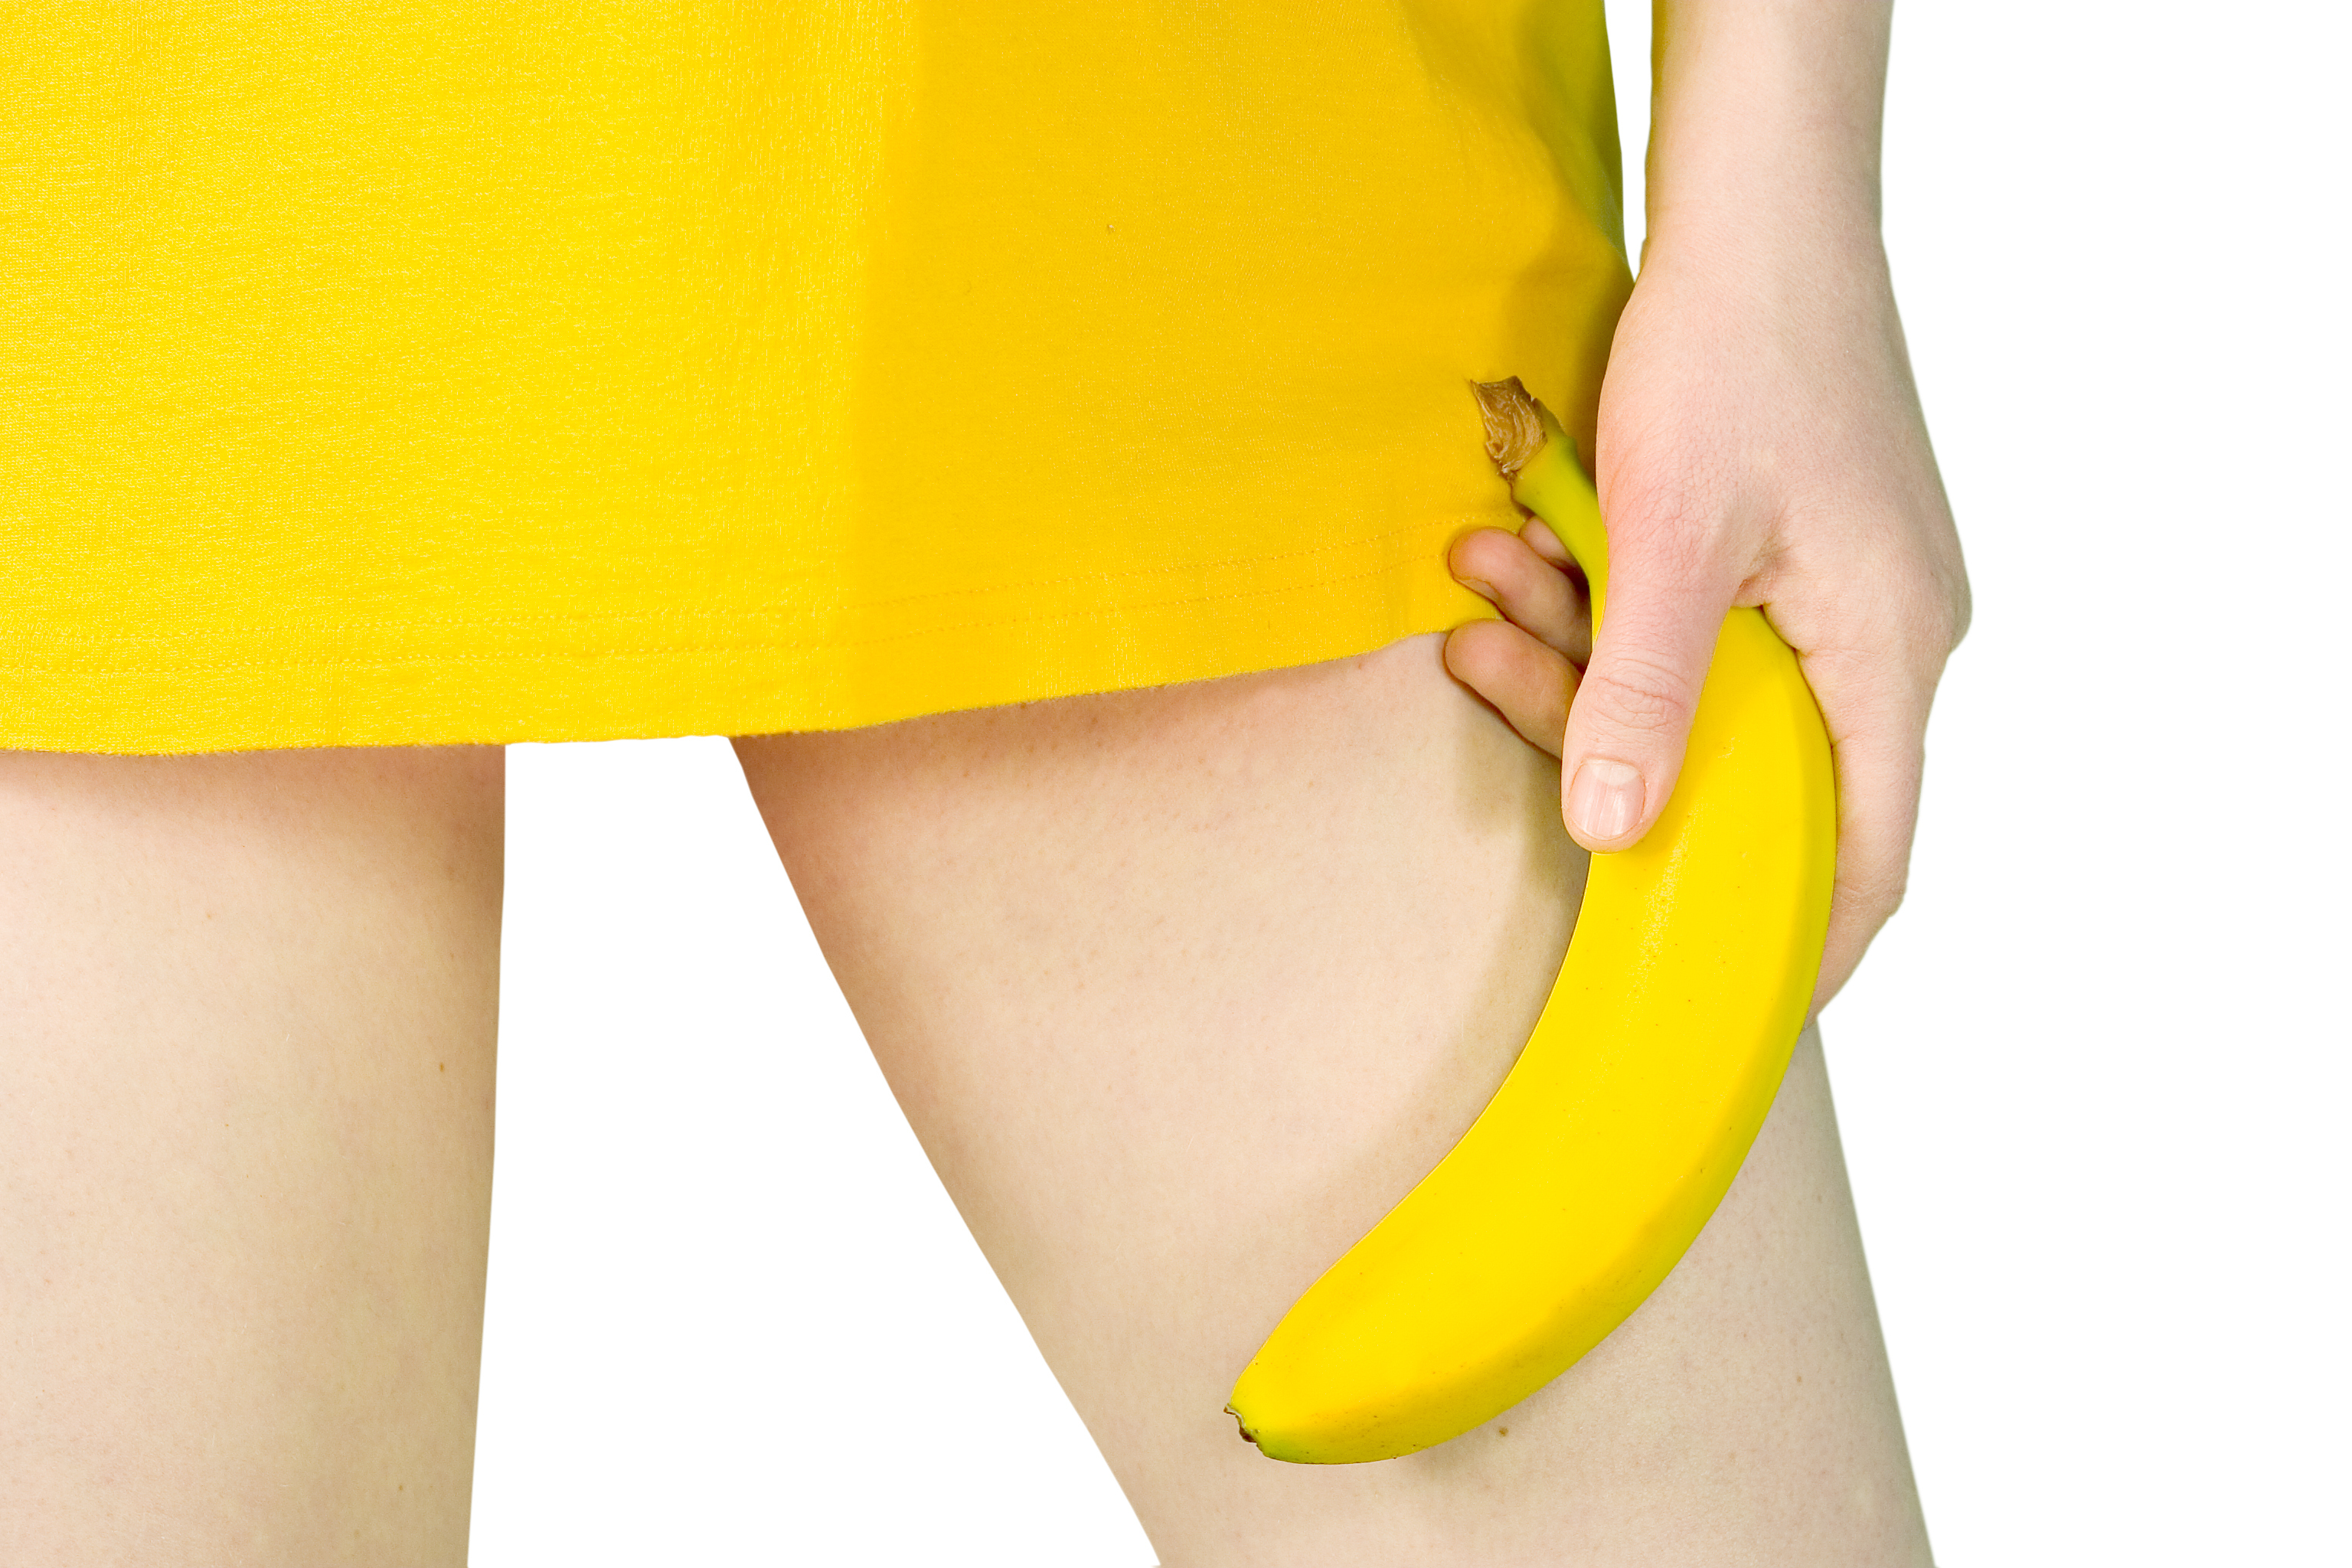 Banán, papaja vagy citrom: melyik gyümölcs jellemzi a legjobban az ágyban  átélt élményeidet? - kiskegyed.hu